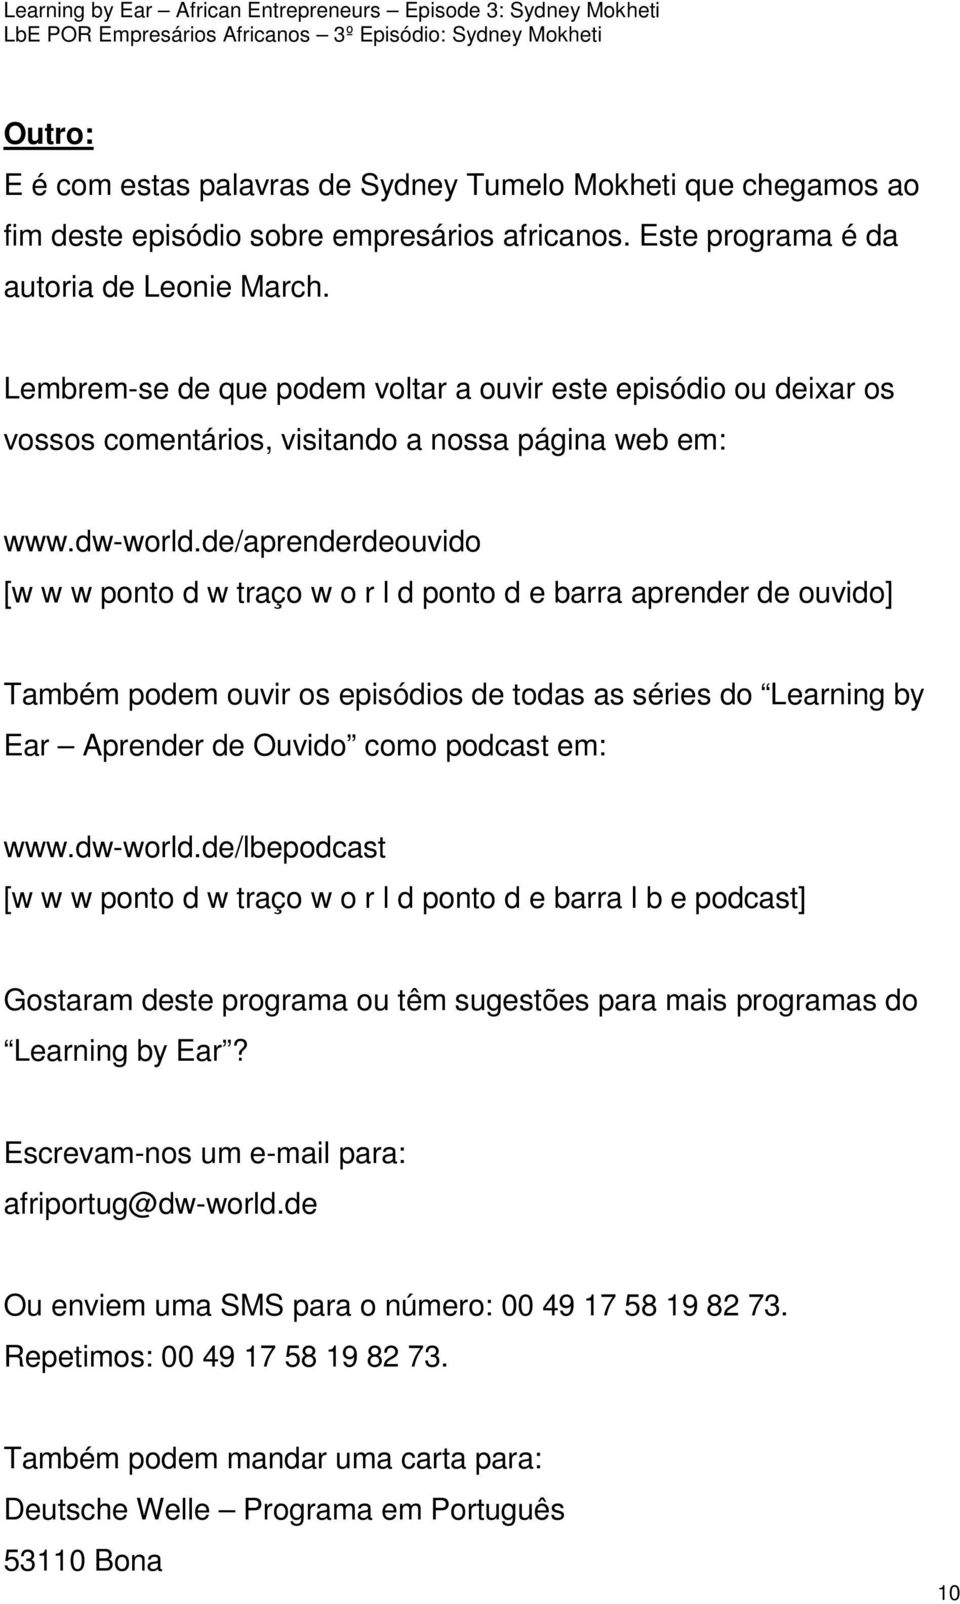 de/aprenderdeouvido [w w w ponto d w traço w o r l d ponto d e barra aprender de ouvido] Também podem ouvir os episódios de todas as séries do Learning by Ear Aprender de Ouvido como podcast em: www.